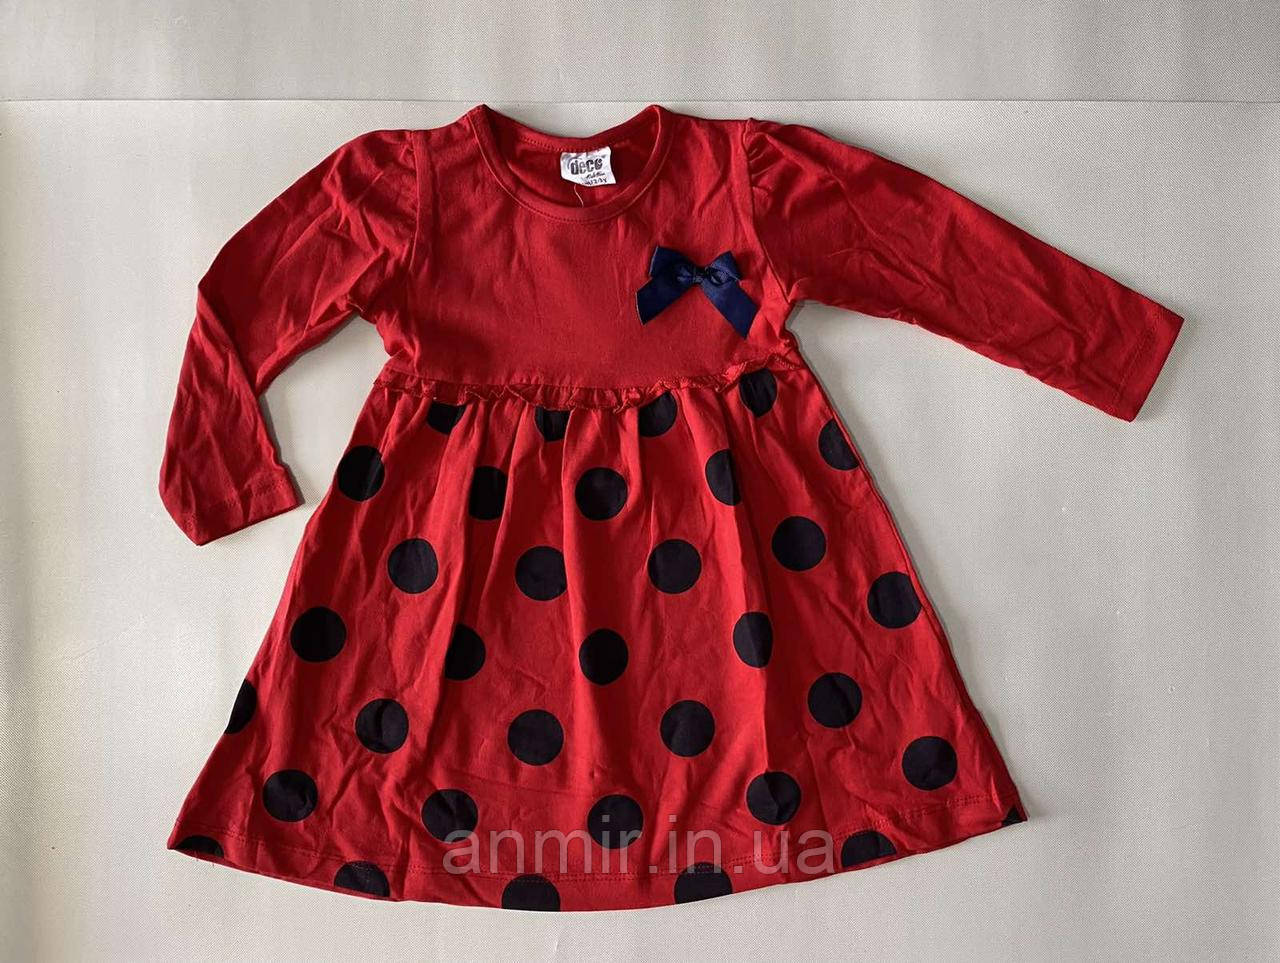 Плаття дитяче для дівчинки в горох котон Deco розмір 2-5 років, колір уточнюйте під час замовлення, фото 1